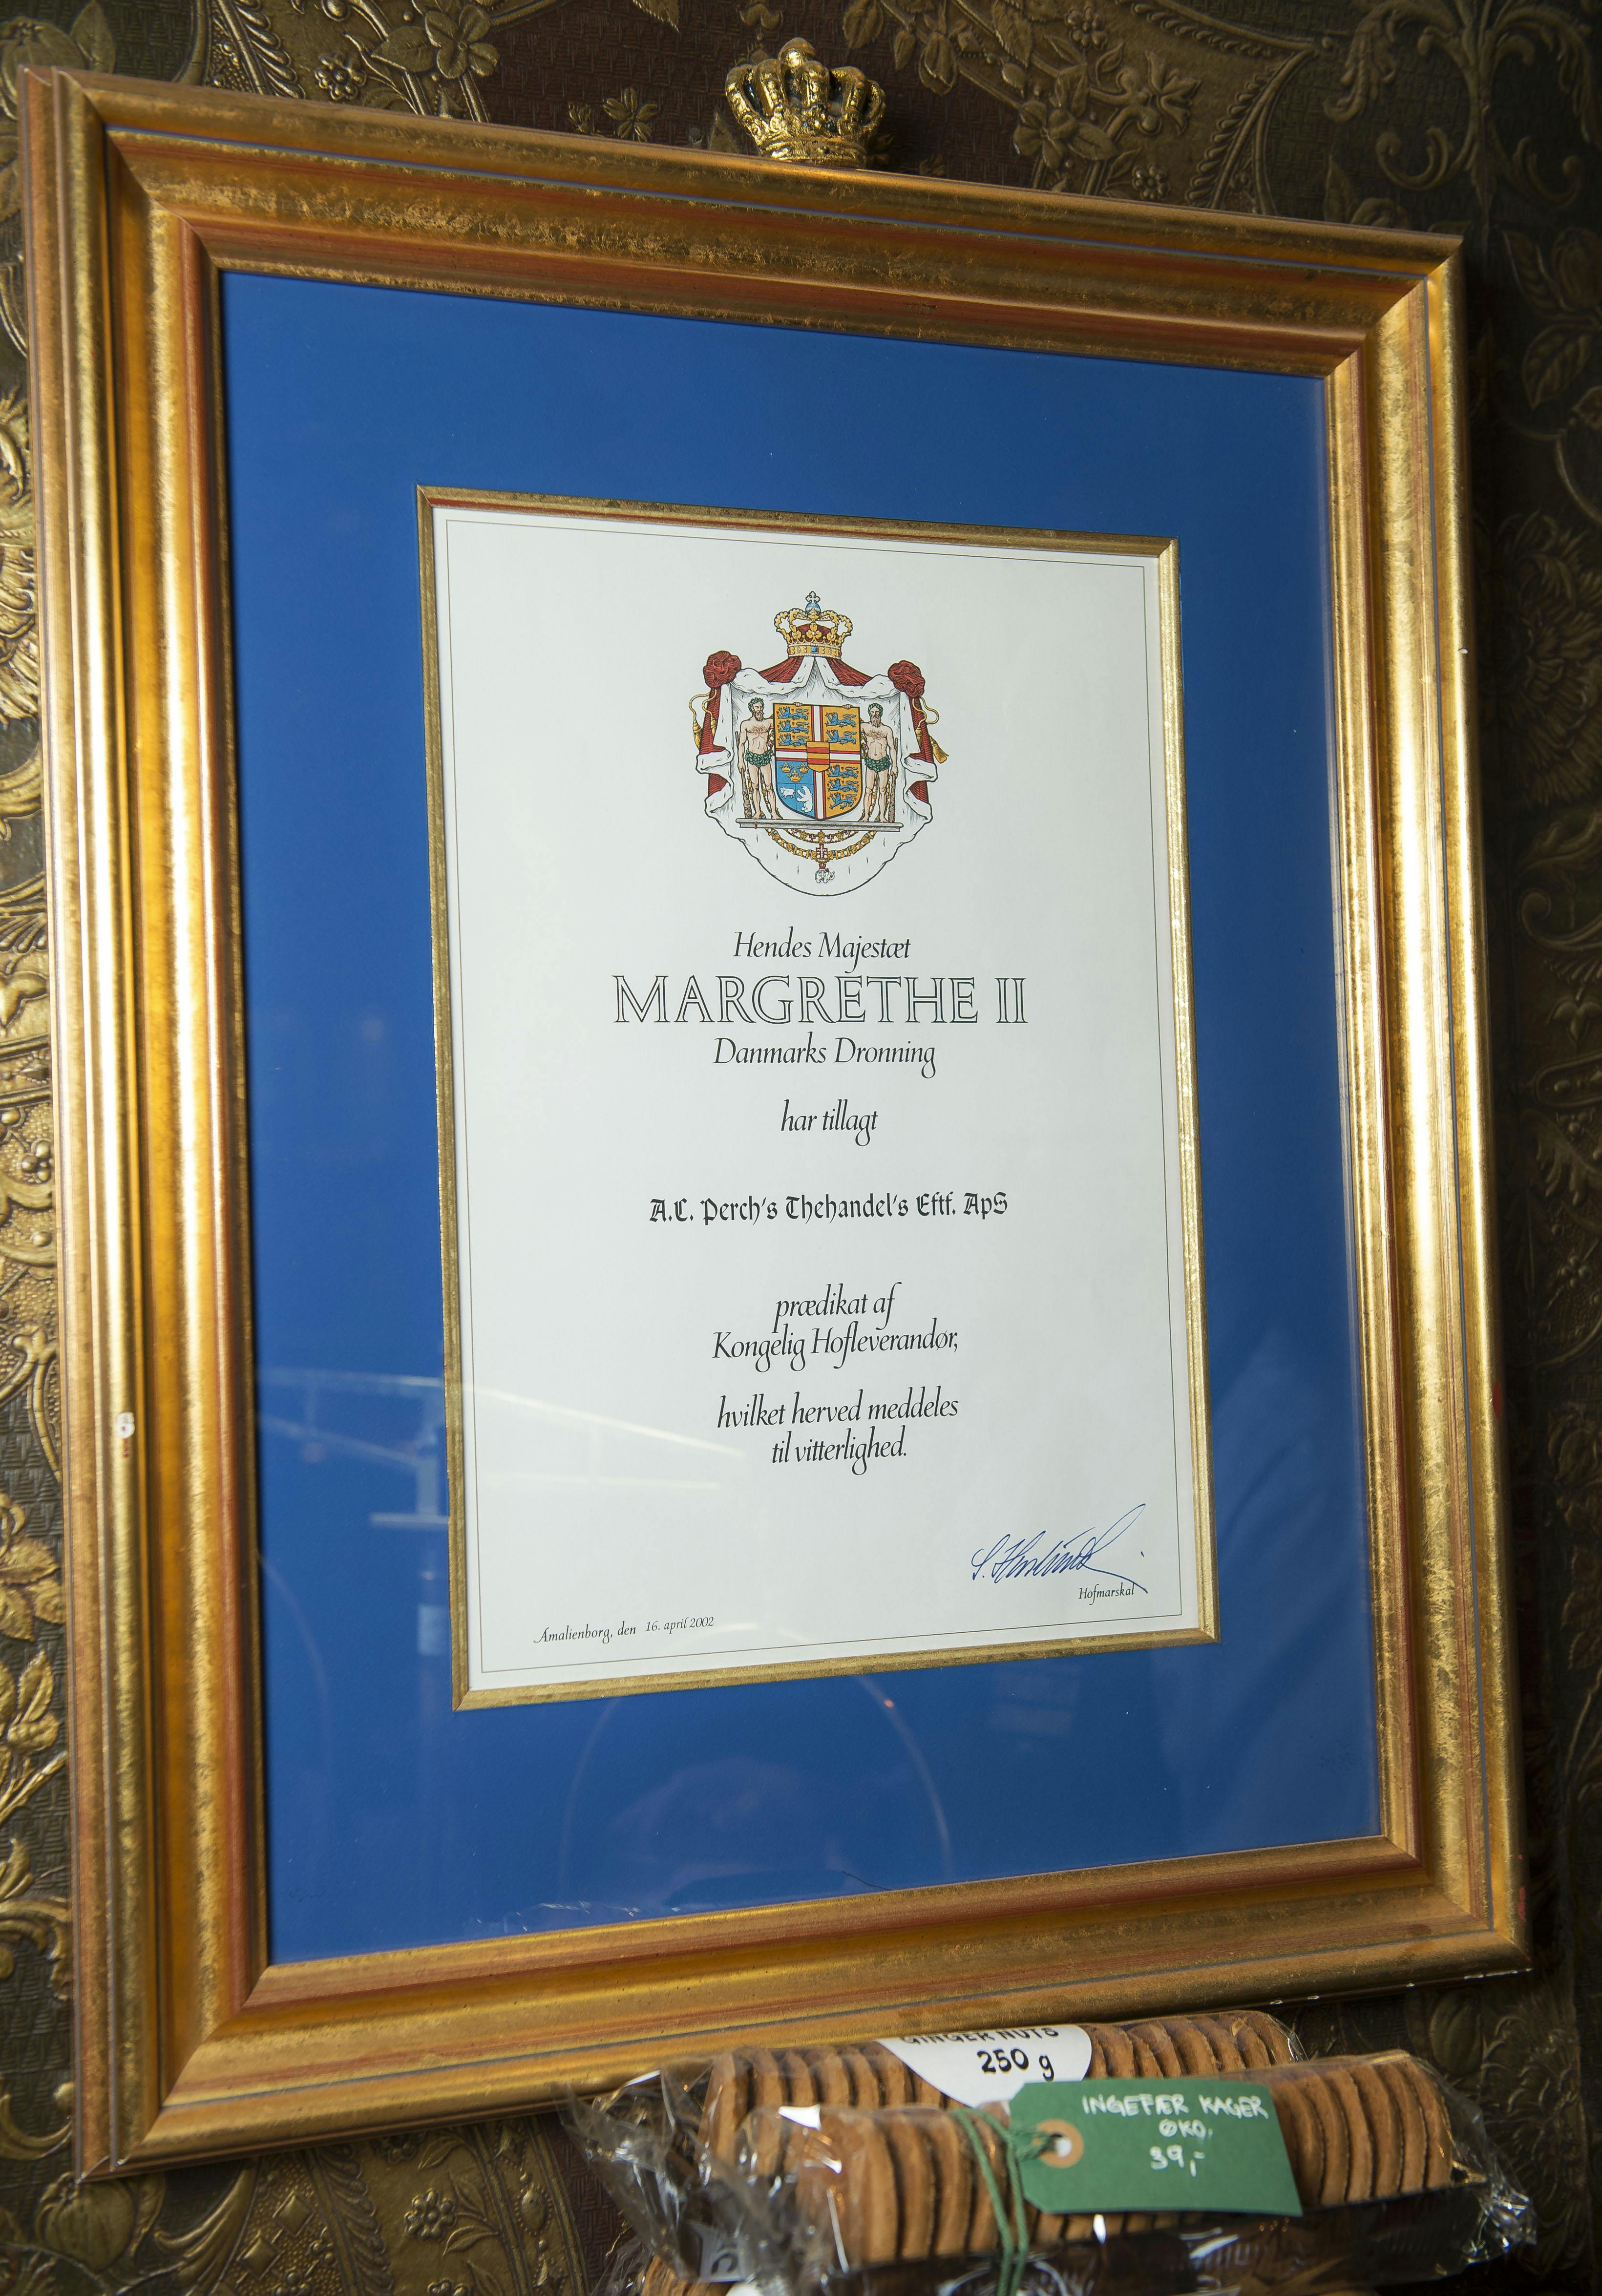 På dronningens fødselsdag i 2002 blev A. C. Perchs Thehandel kongelig hofleverandør.